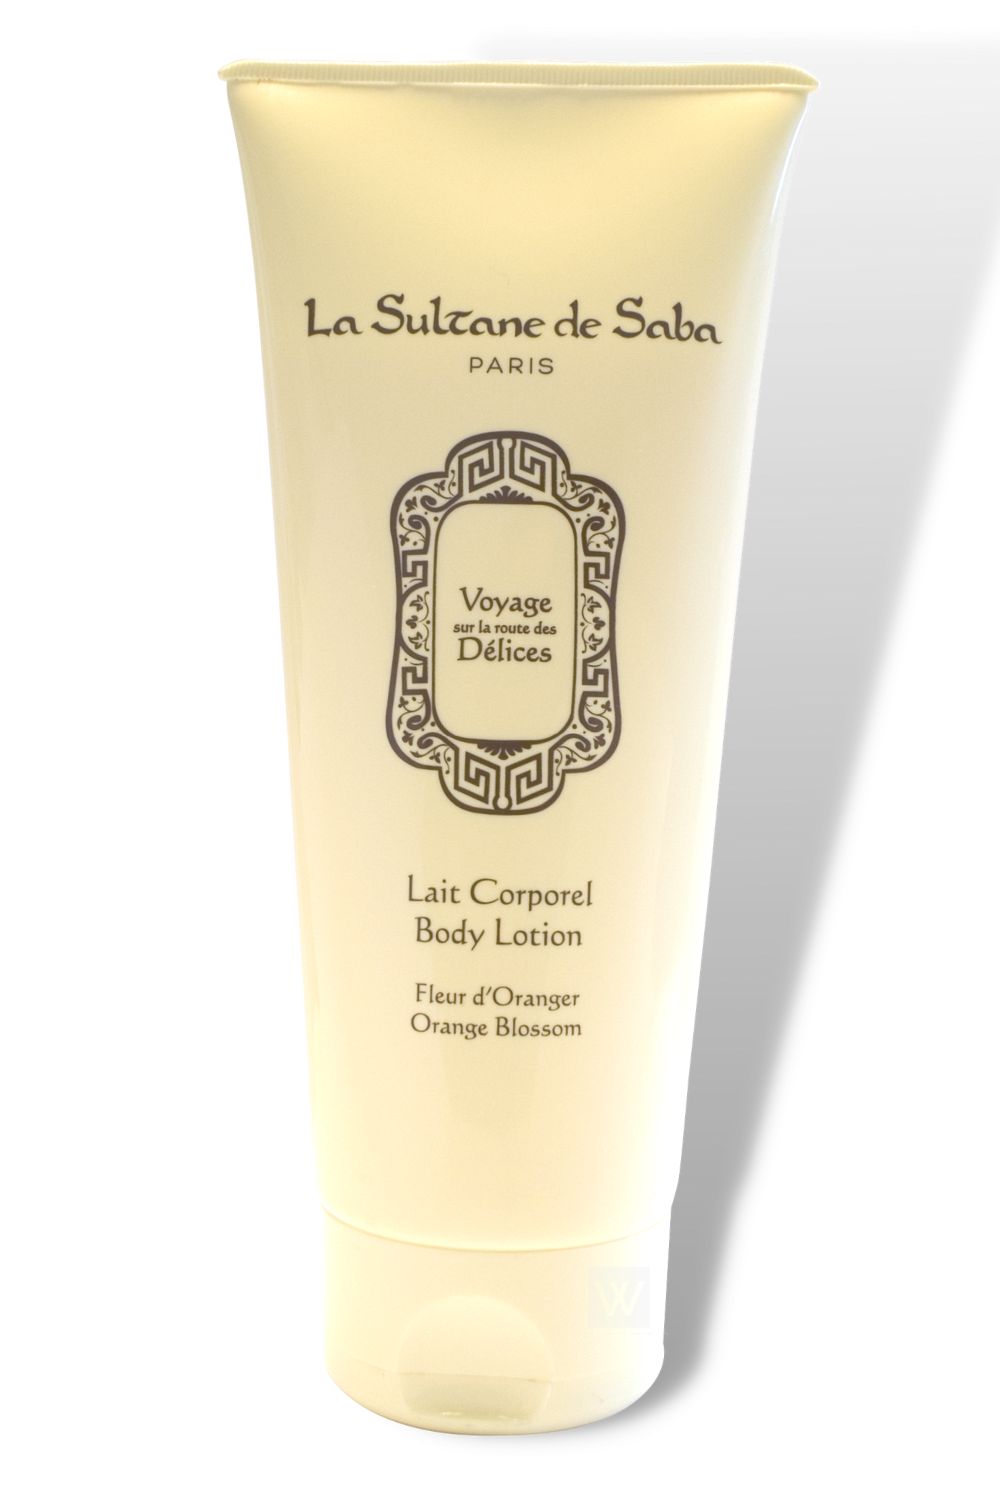 La Sultane De Saba Lait Corporel Body Lotion Musk, Incense, Vanilla 200ml